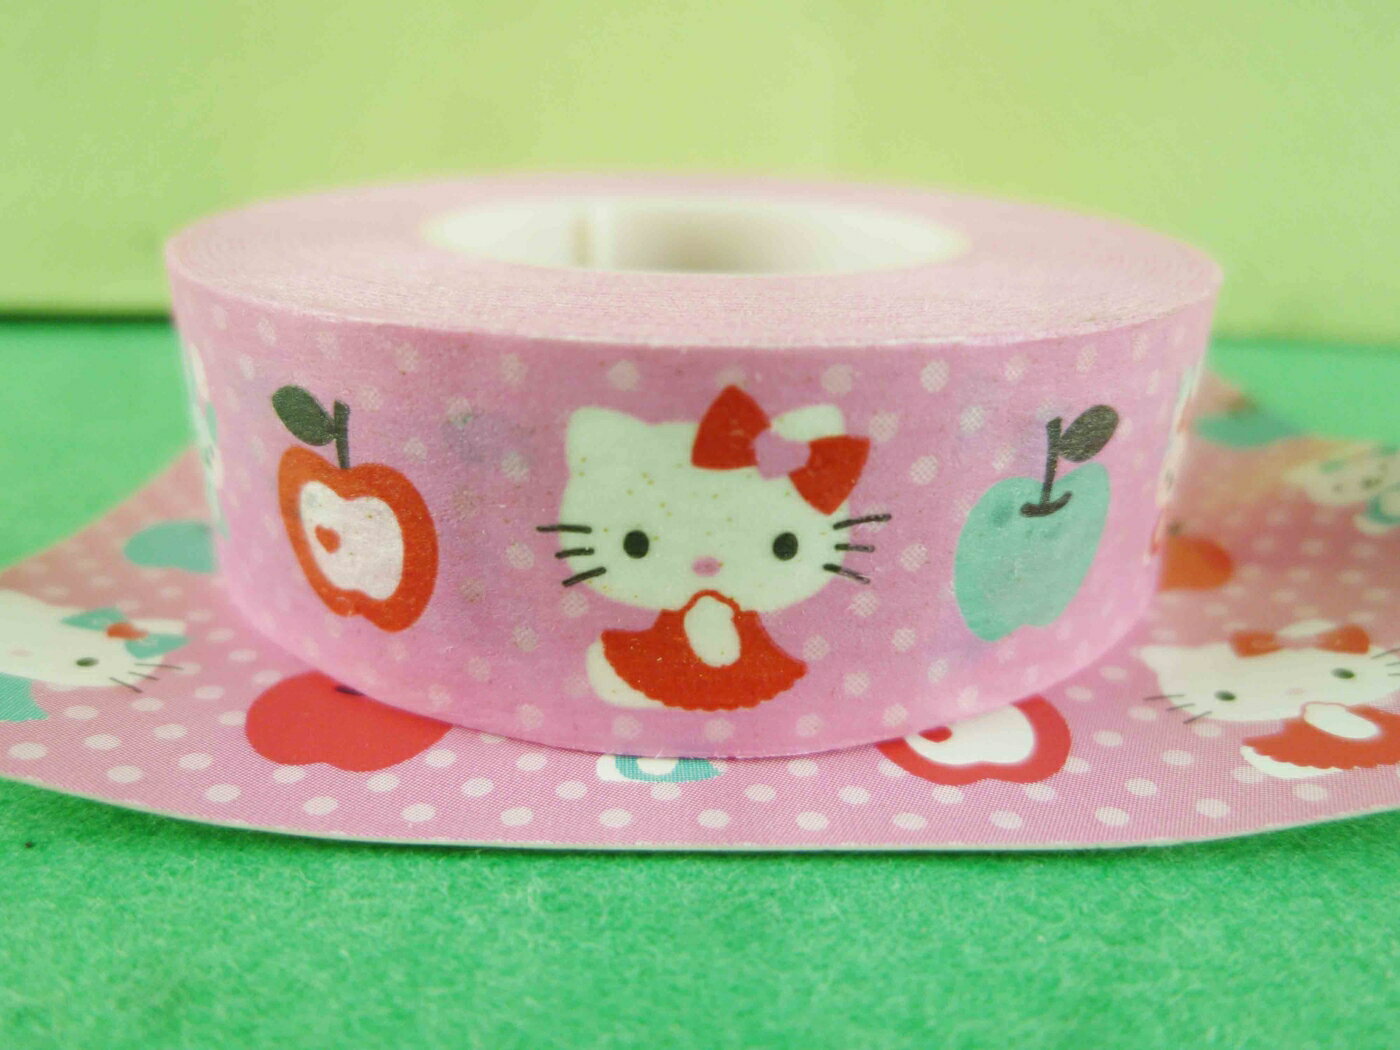 【震撼精品百貨】Hello Kitty 凱蒂貓 紙膠帶-粉蘋果圖案 震撼日式精品百貨